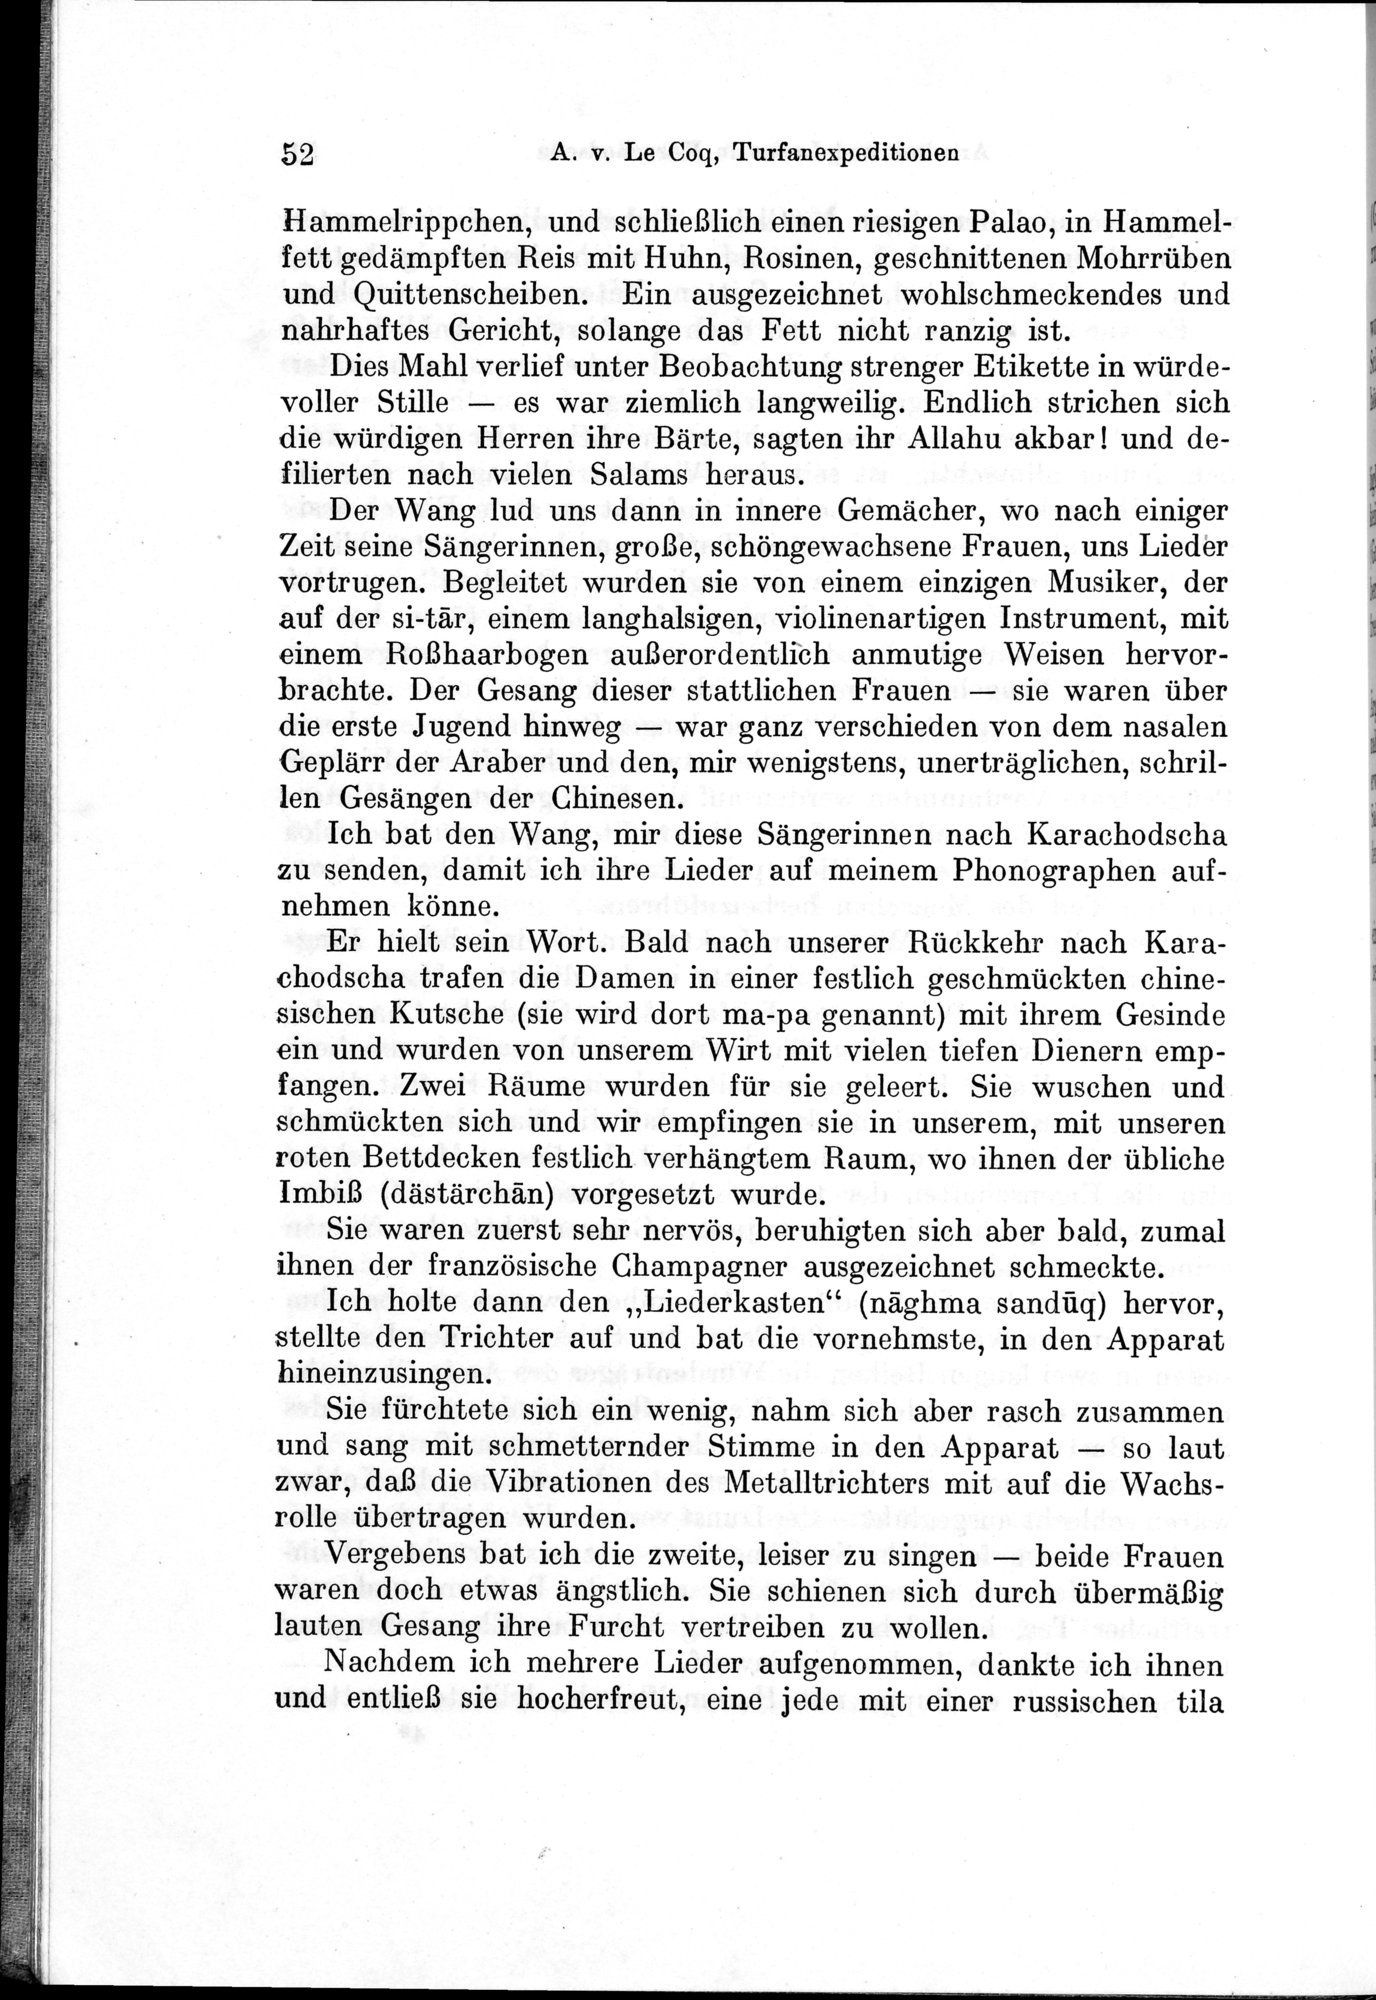 Auf Hellas Spuren in Ostturkistan : vol.1 / Page 80 (Grayscale High Resolution Image)